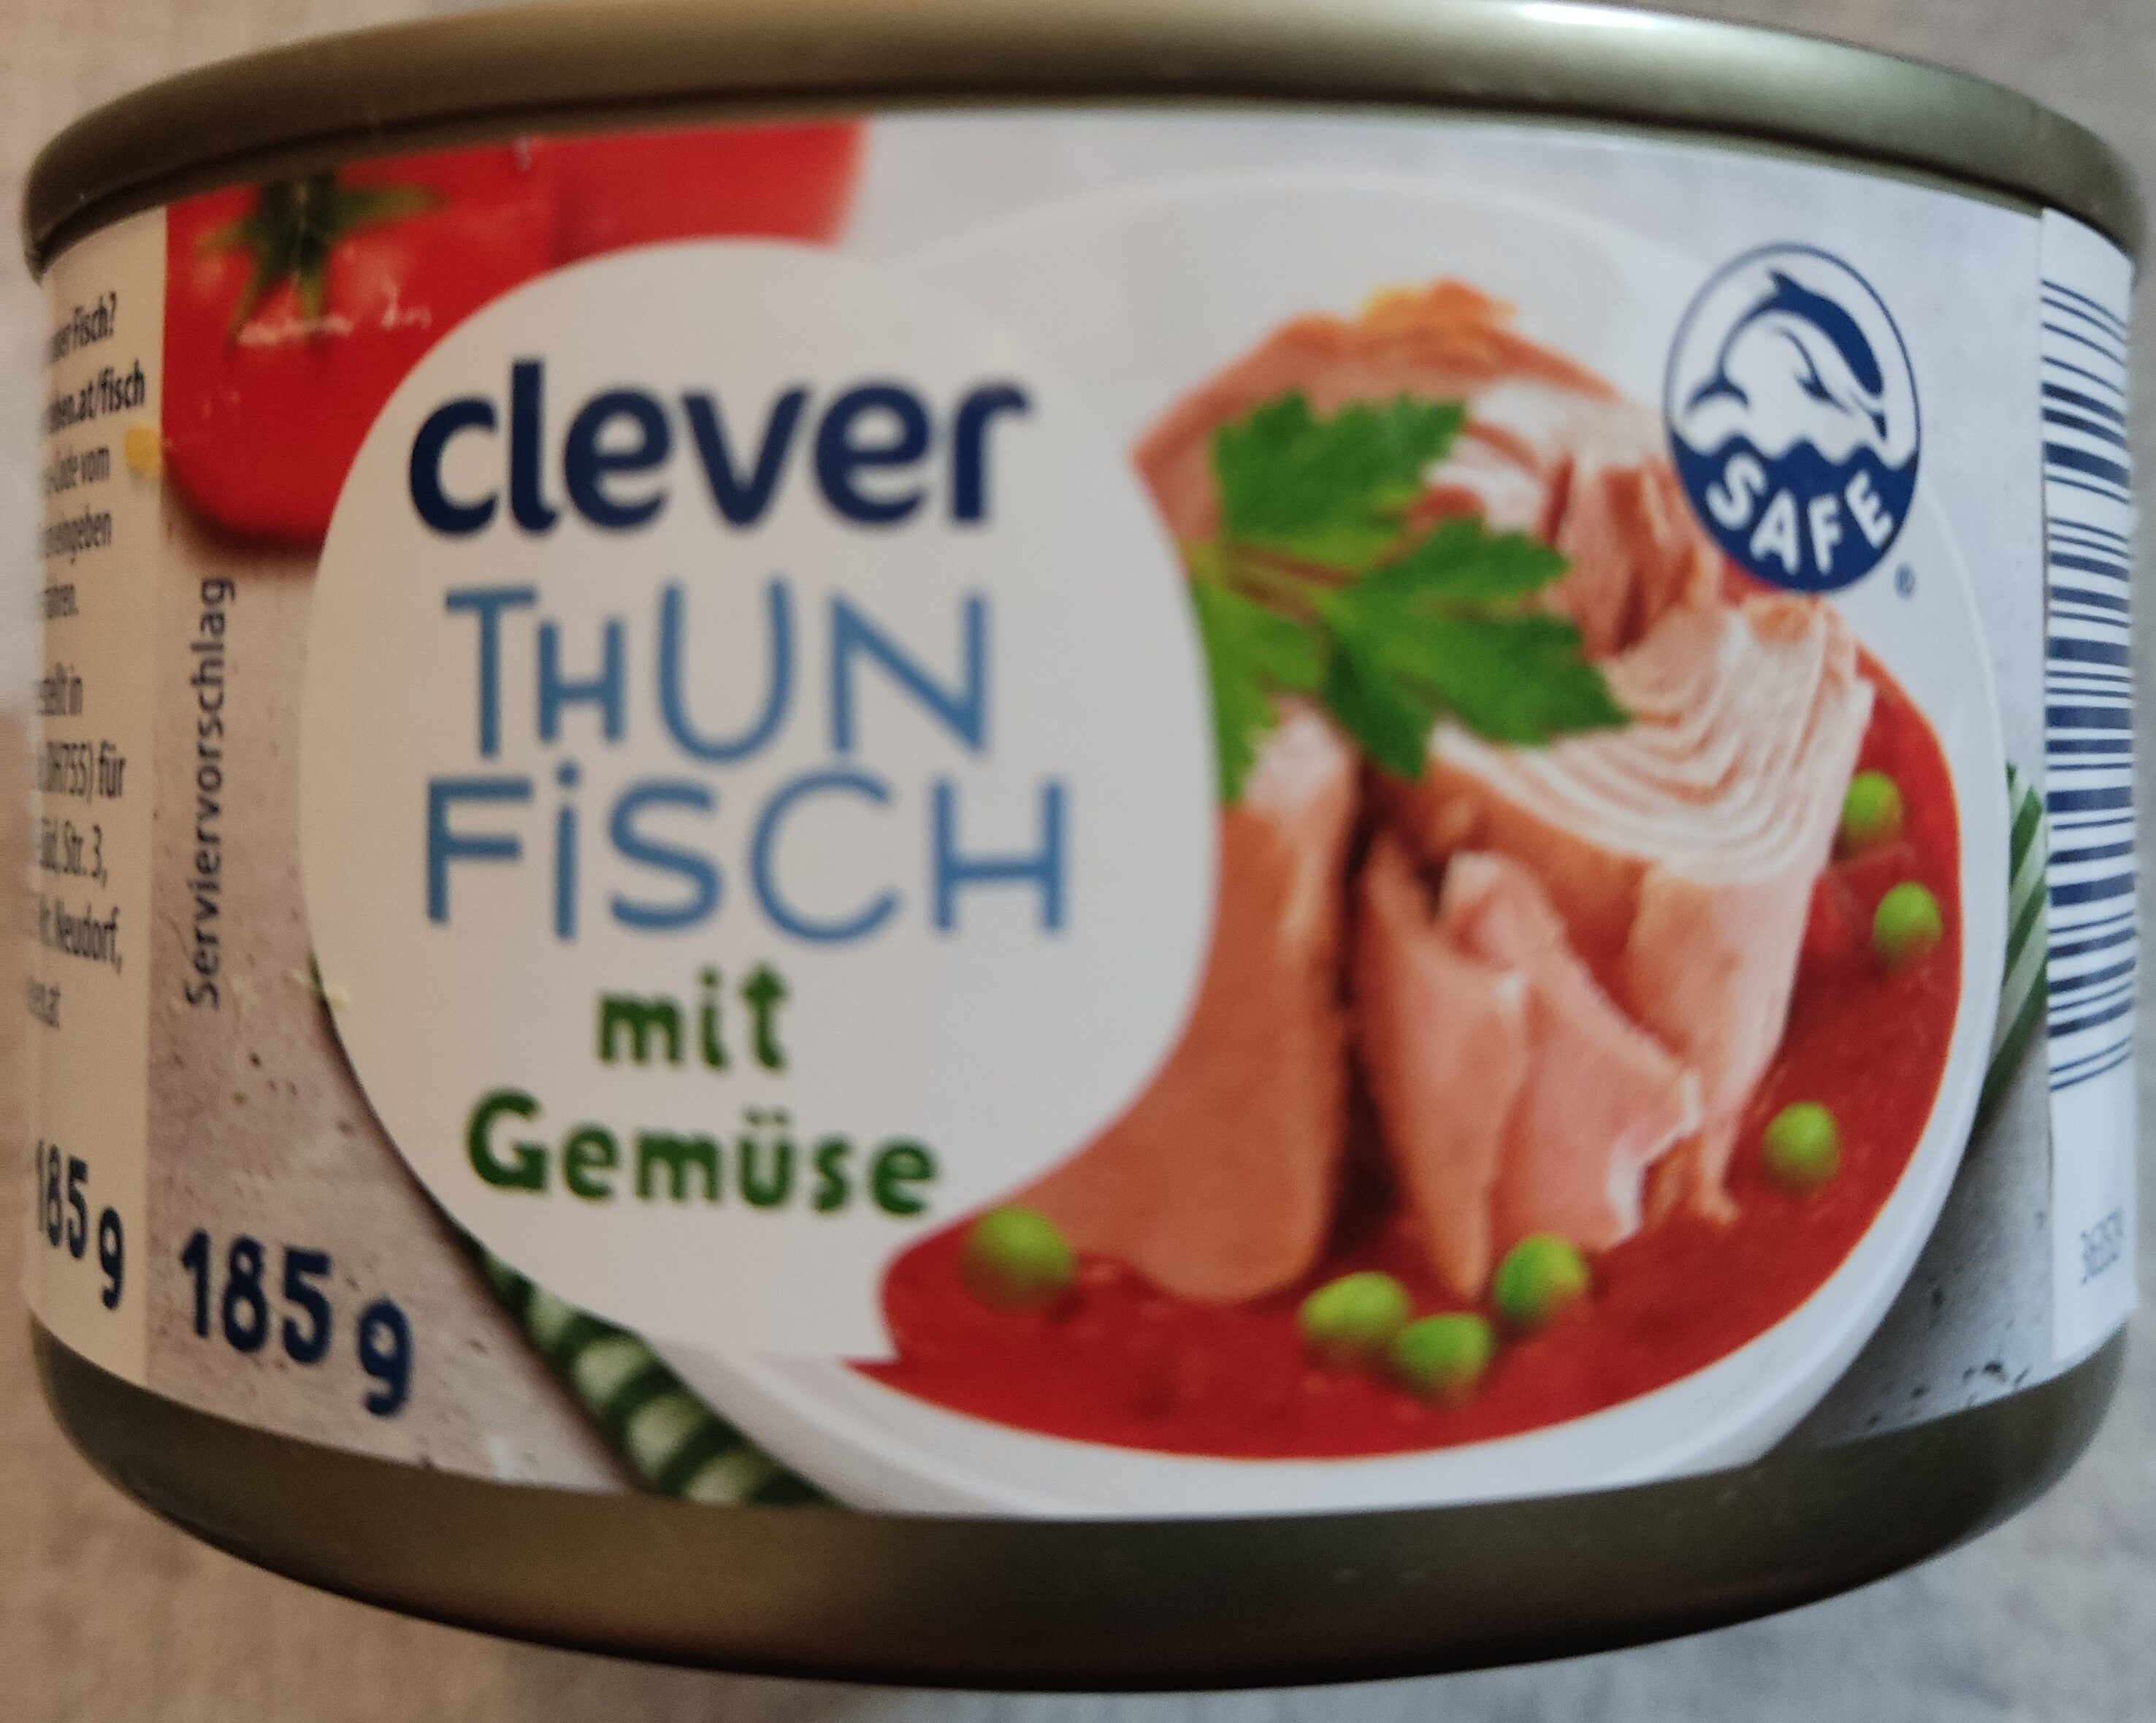 Thunfisch mit Gemüse - Produkt